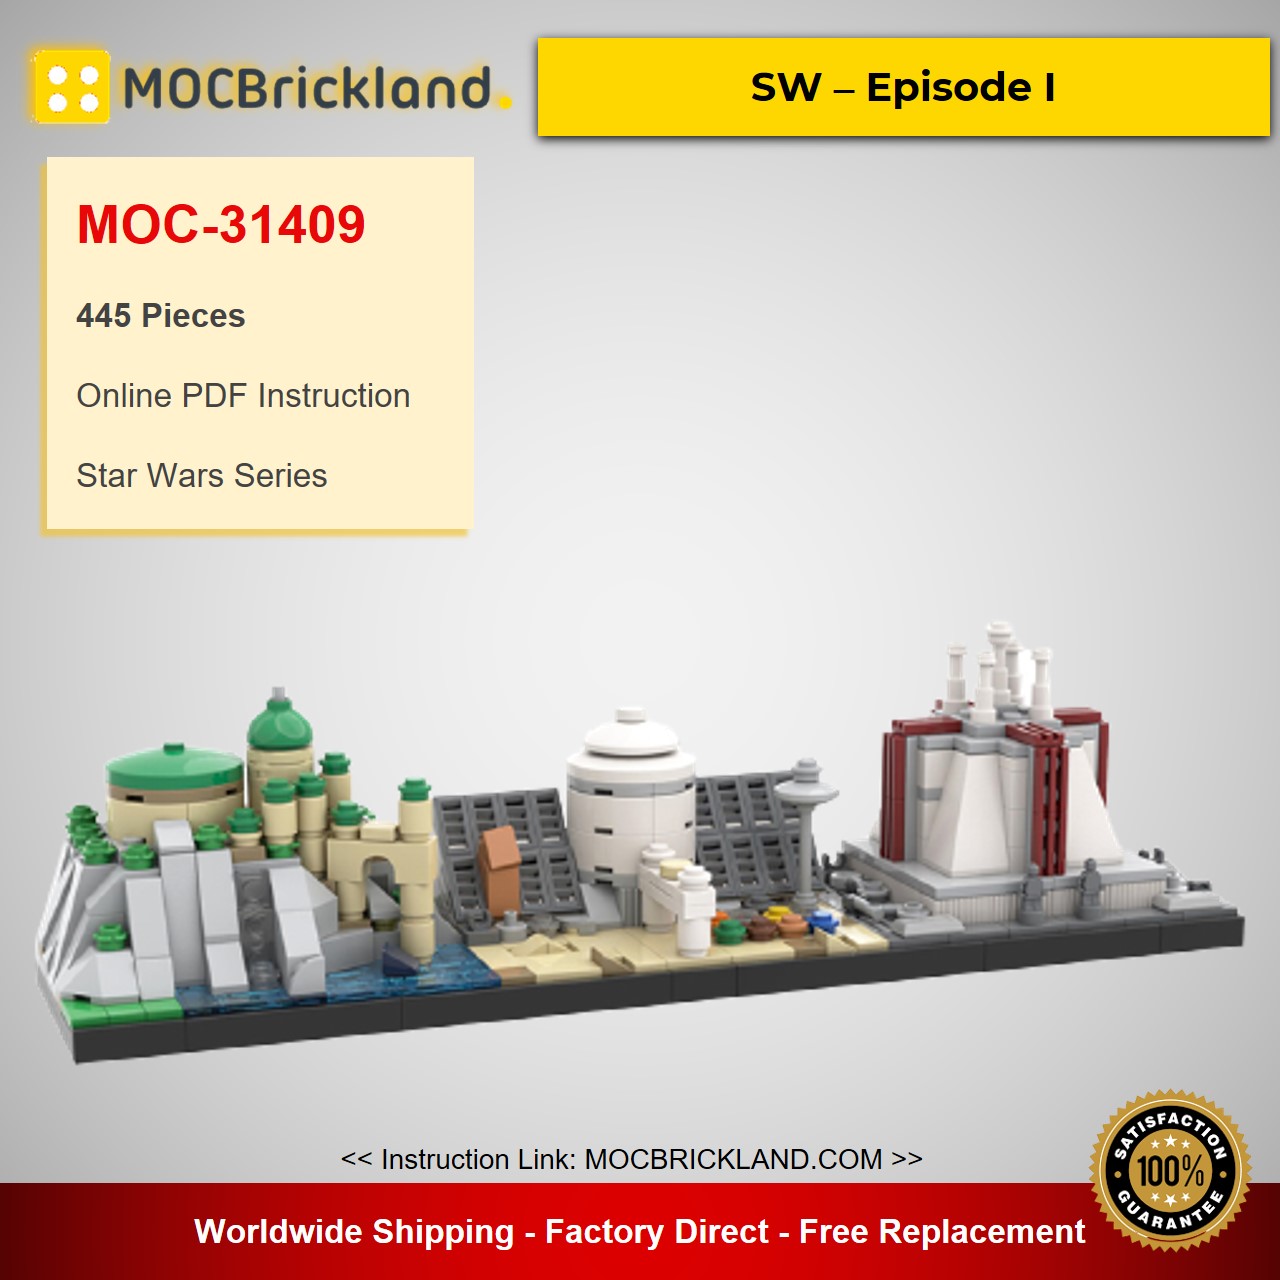 MOCBRICKLAND MOC-31409 SW – Episode I